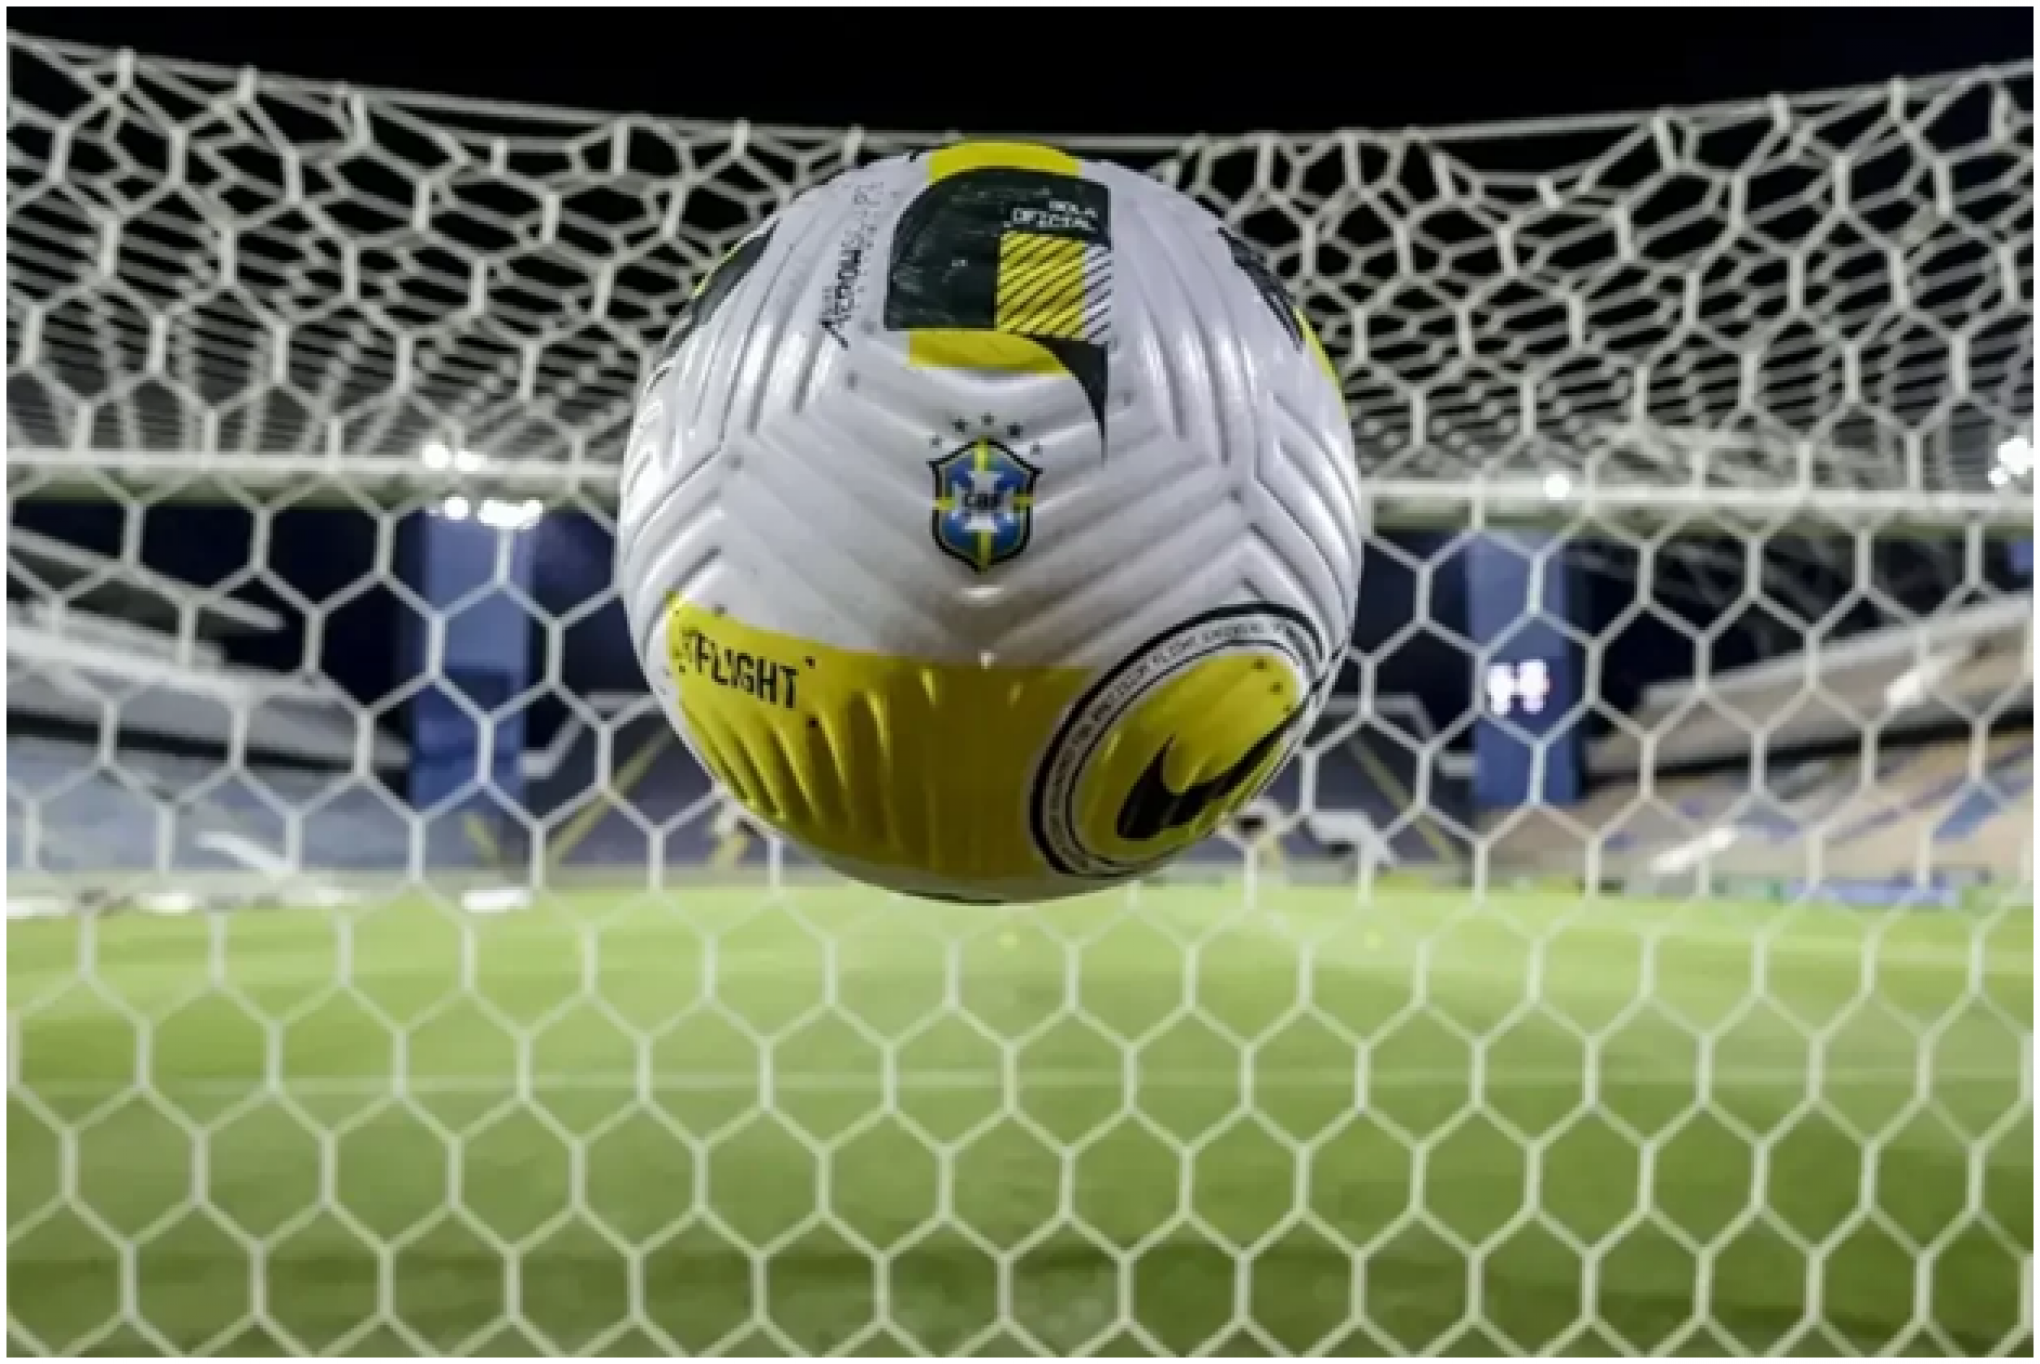 Assistir aos torneios esportivos ao vivo com comentaristas em português - onde encontrá-lo